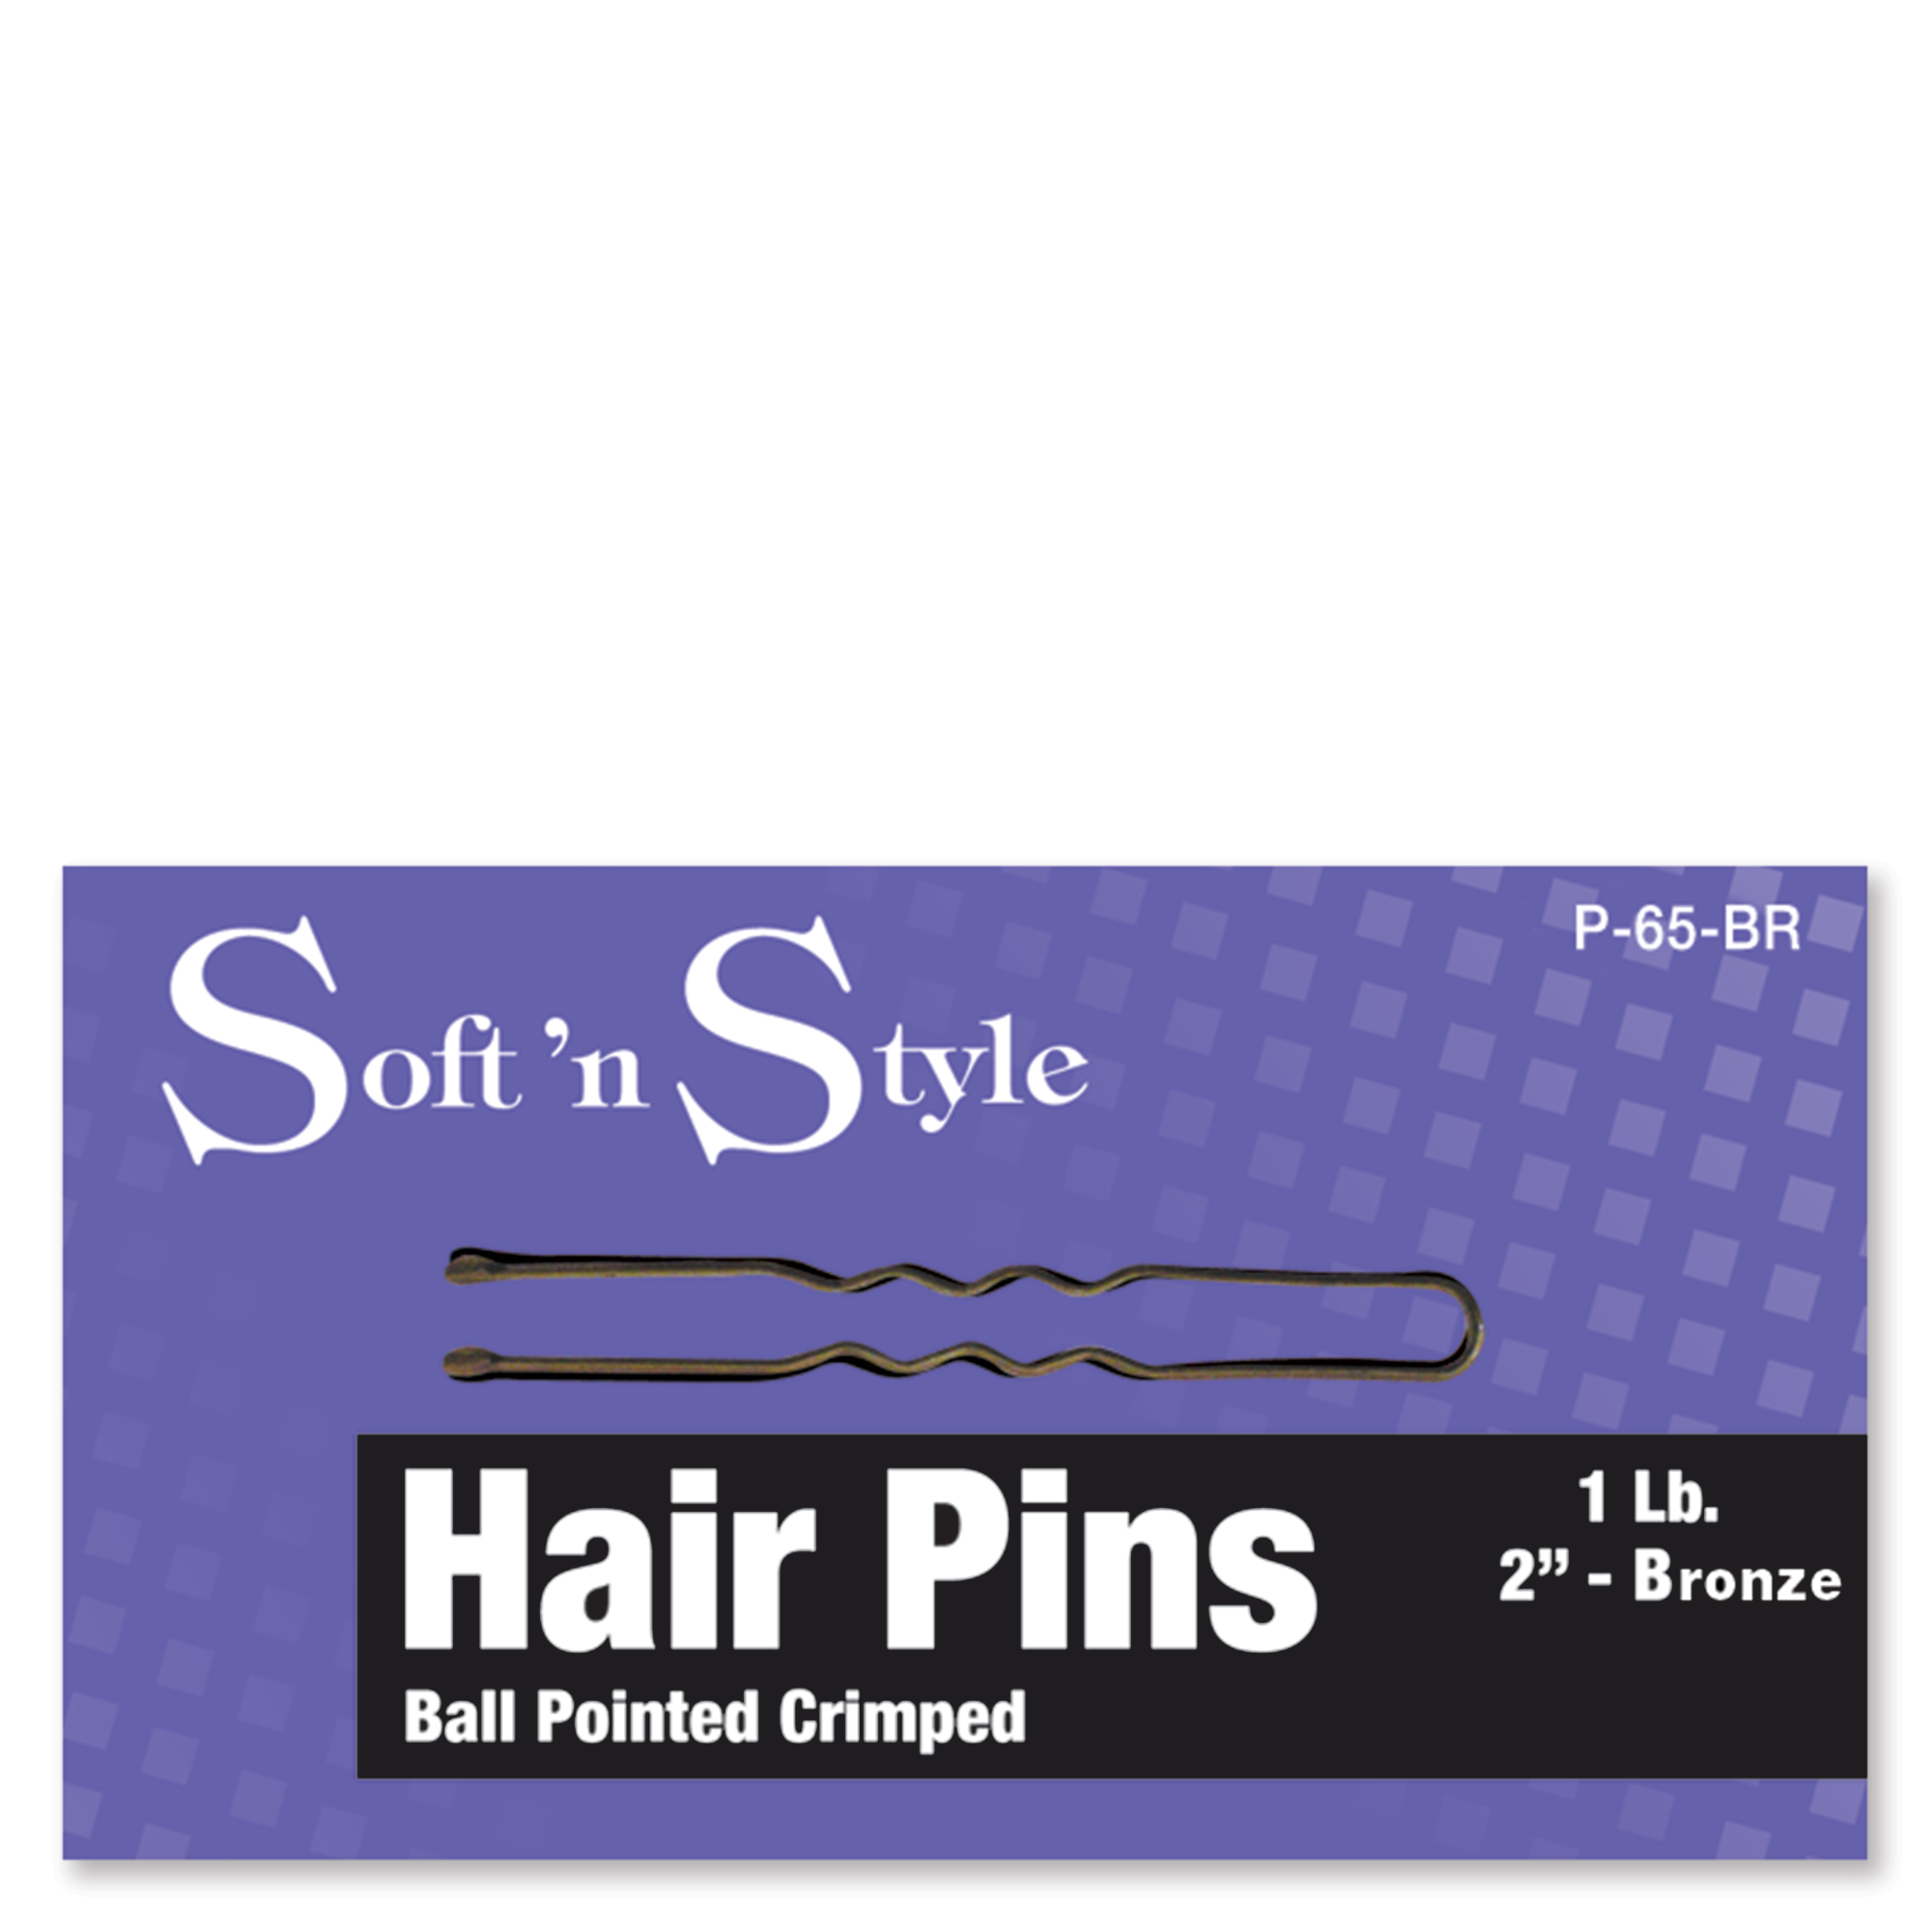 Hair Pins, Bronze, 1 lb. box - 2"